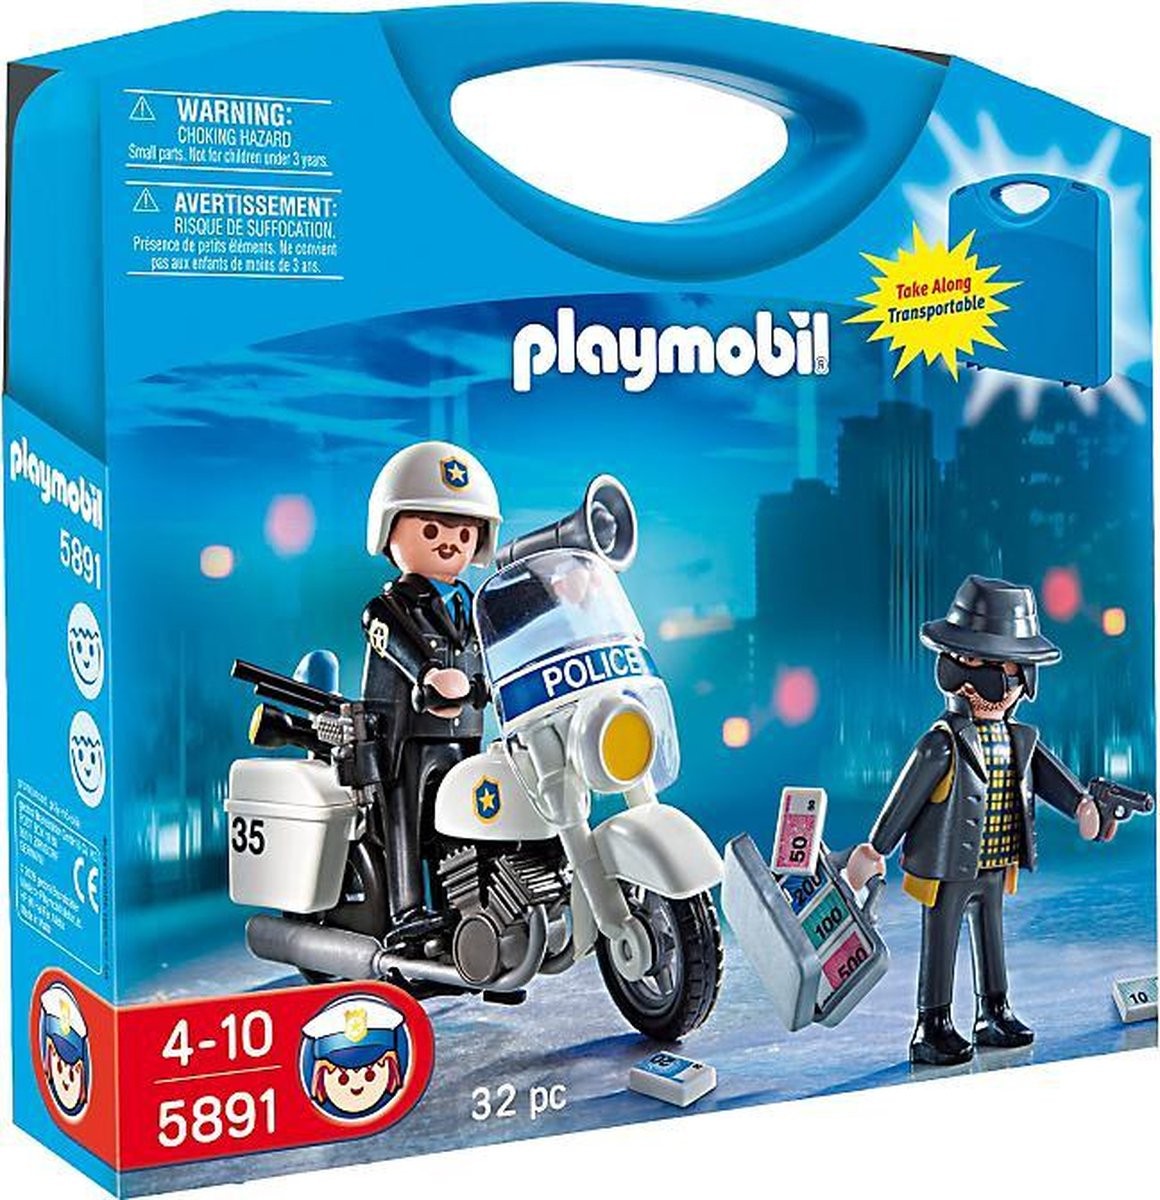 Ouderling kwartaal redden Playmobil Meeneemkoffer Politie - 5891. Speelgoed van Zepper